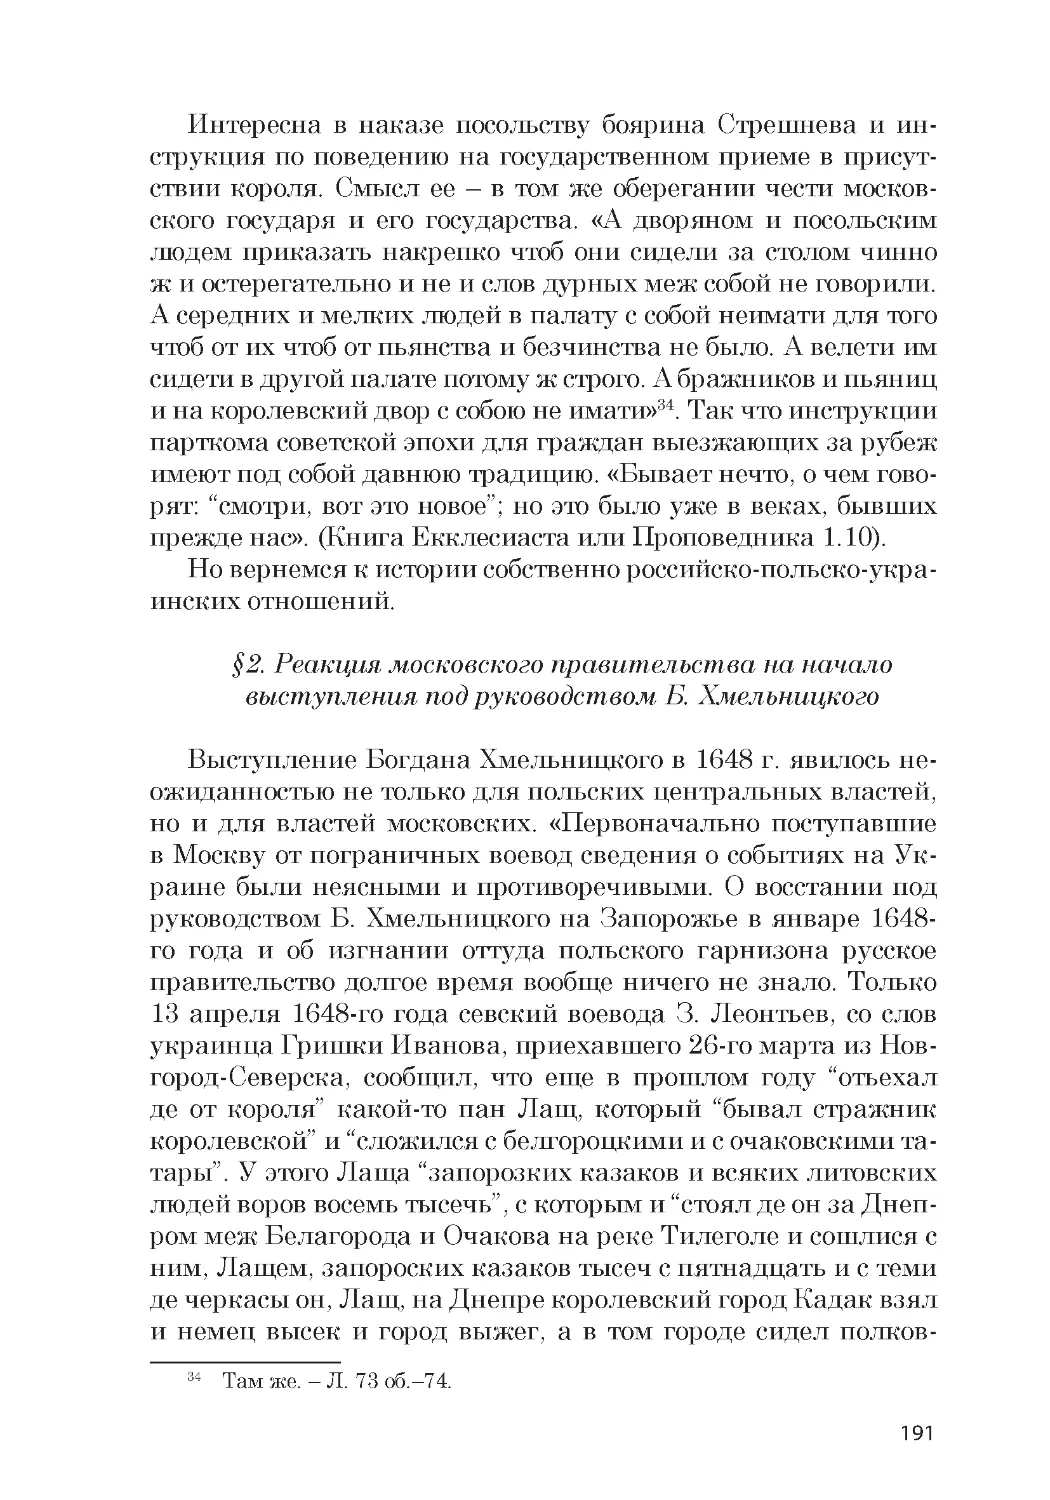 ﻿§2. Реакция московского правительства на начало выступления под руководством Б. Хмельницког